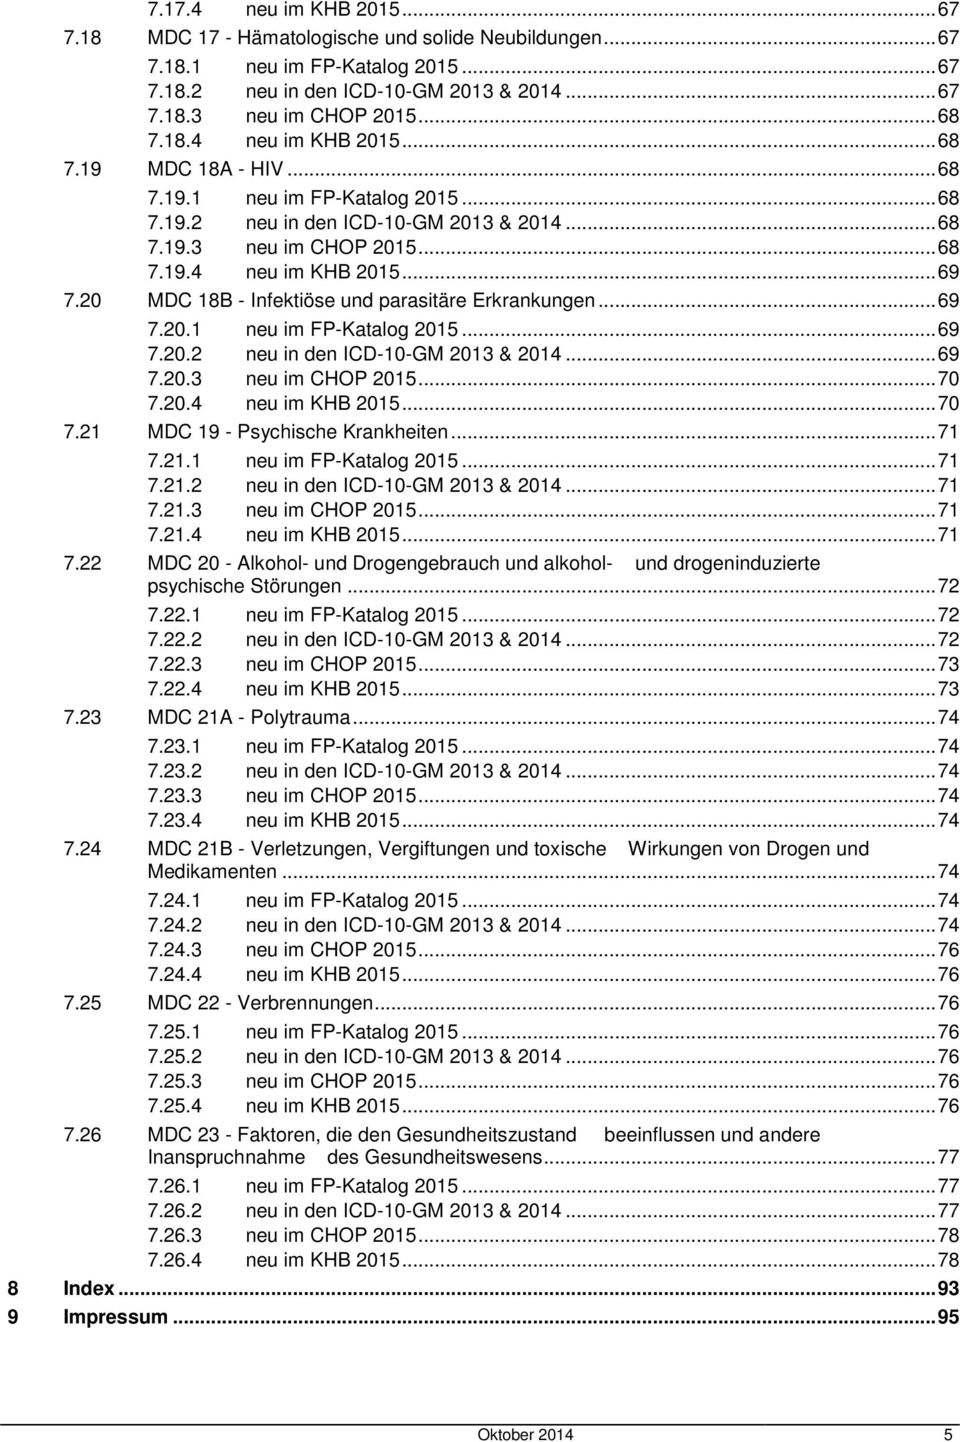 20 MDC 18B - Infektiöse und parasitäre Erkrankungen... 69 7.20.1 neu im FP-Katalog 2015... 69 7.20.2 neu in den ICD-10-GM 2013 & 2014... 69 7.20.3 neu im CHOP 2015... 70 7.